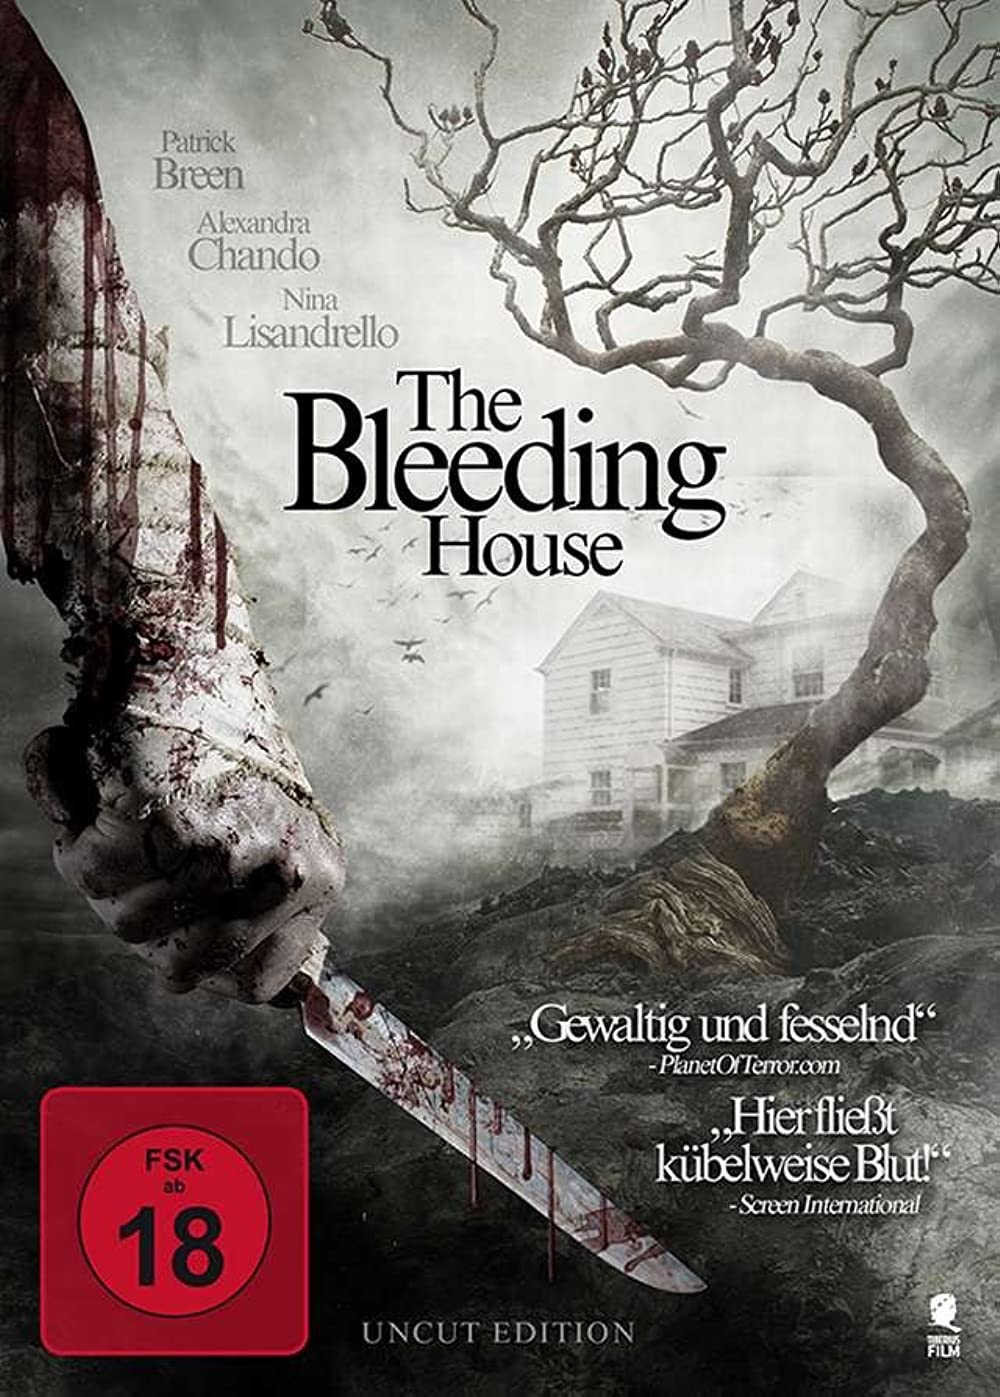 Filmbeschreibung zu The Bleeding House